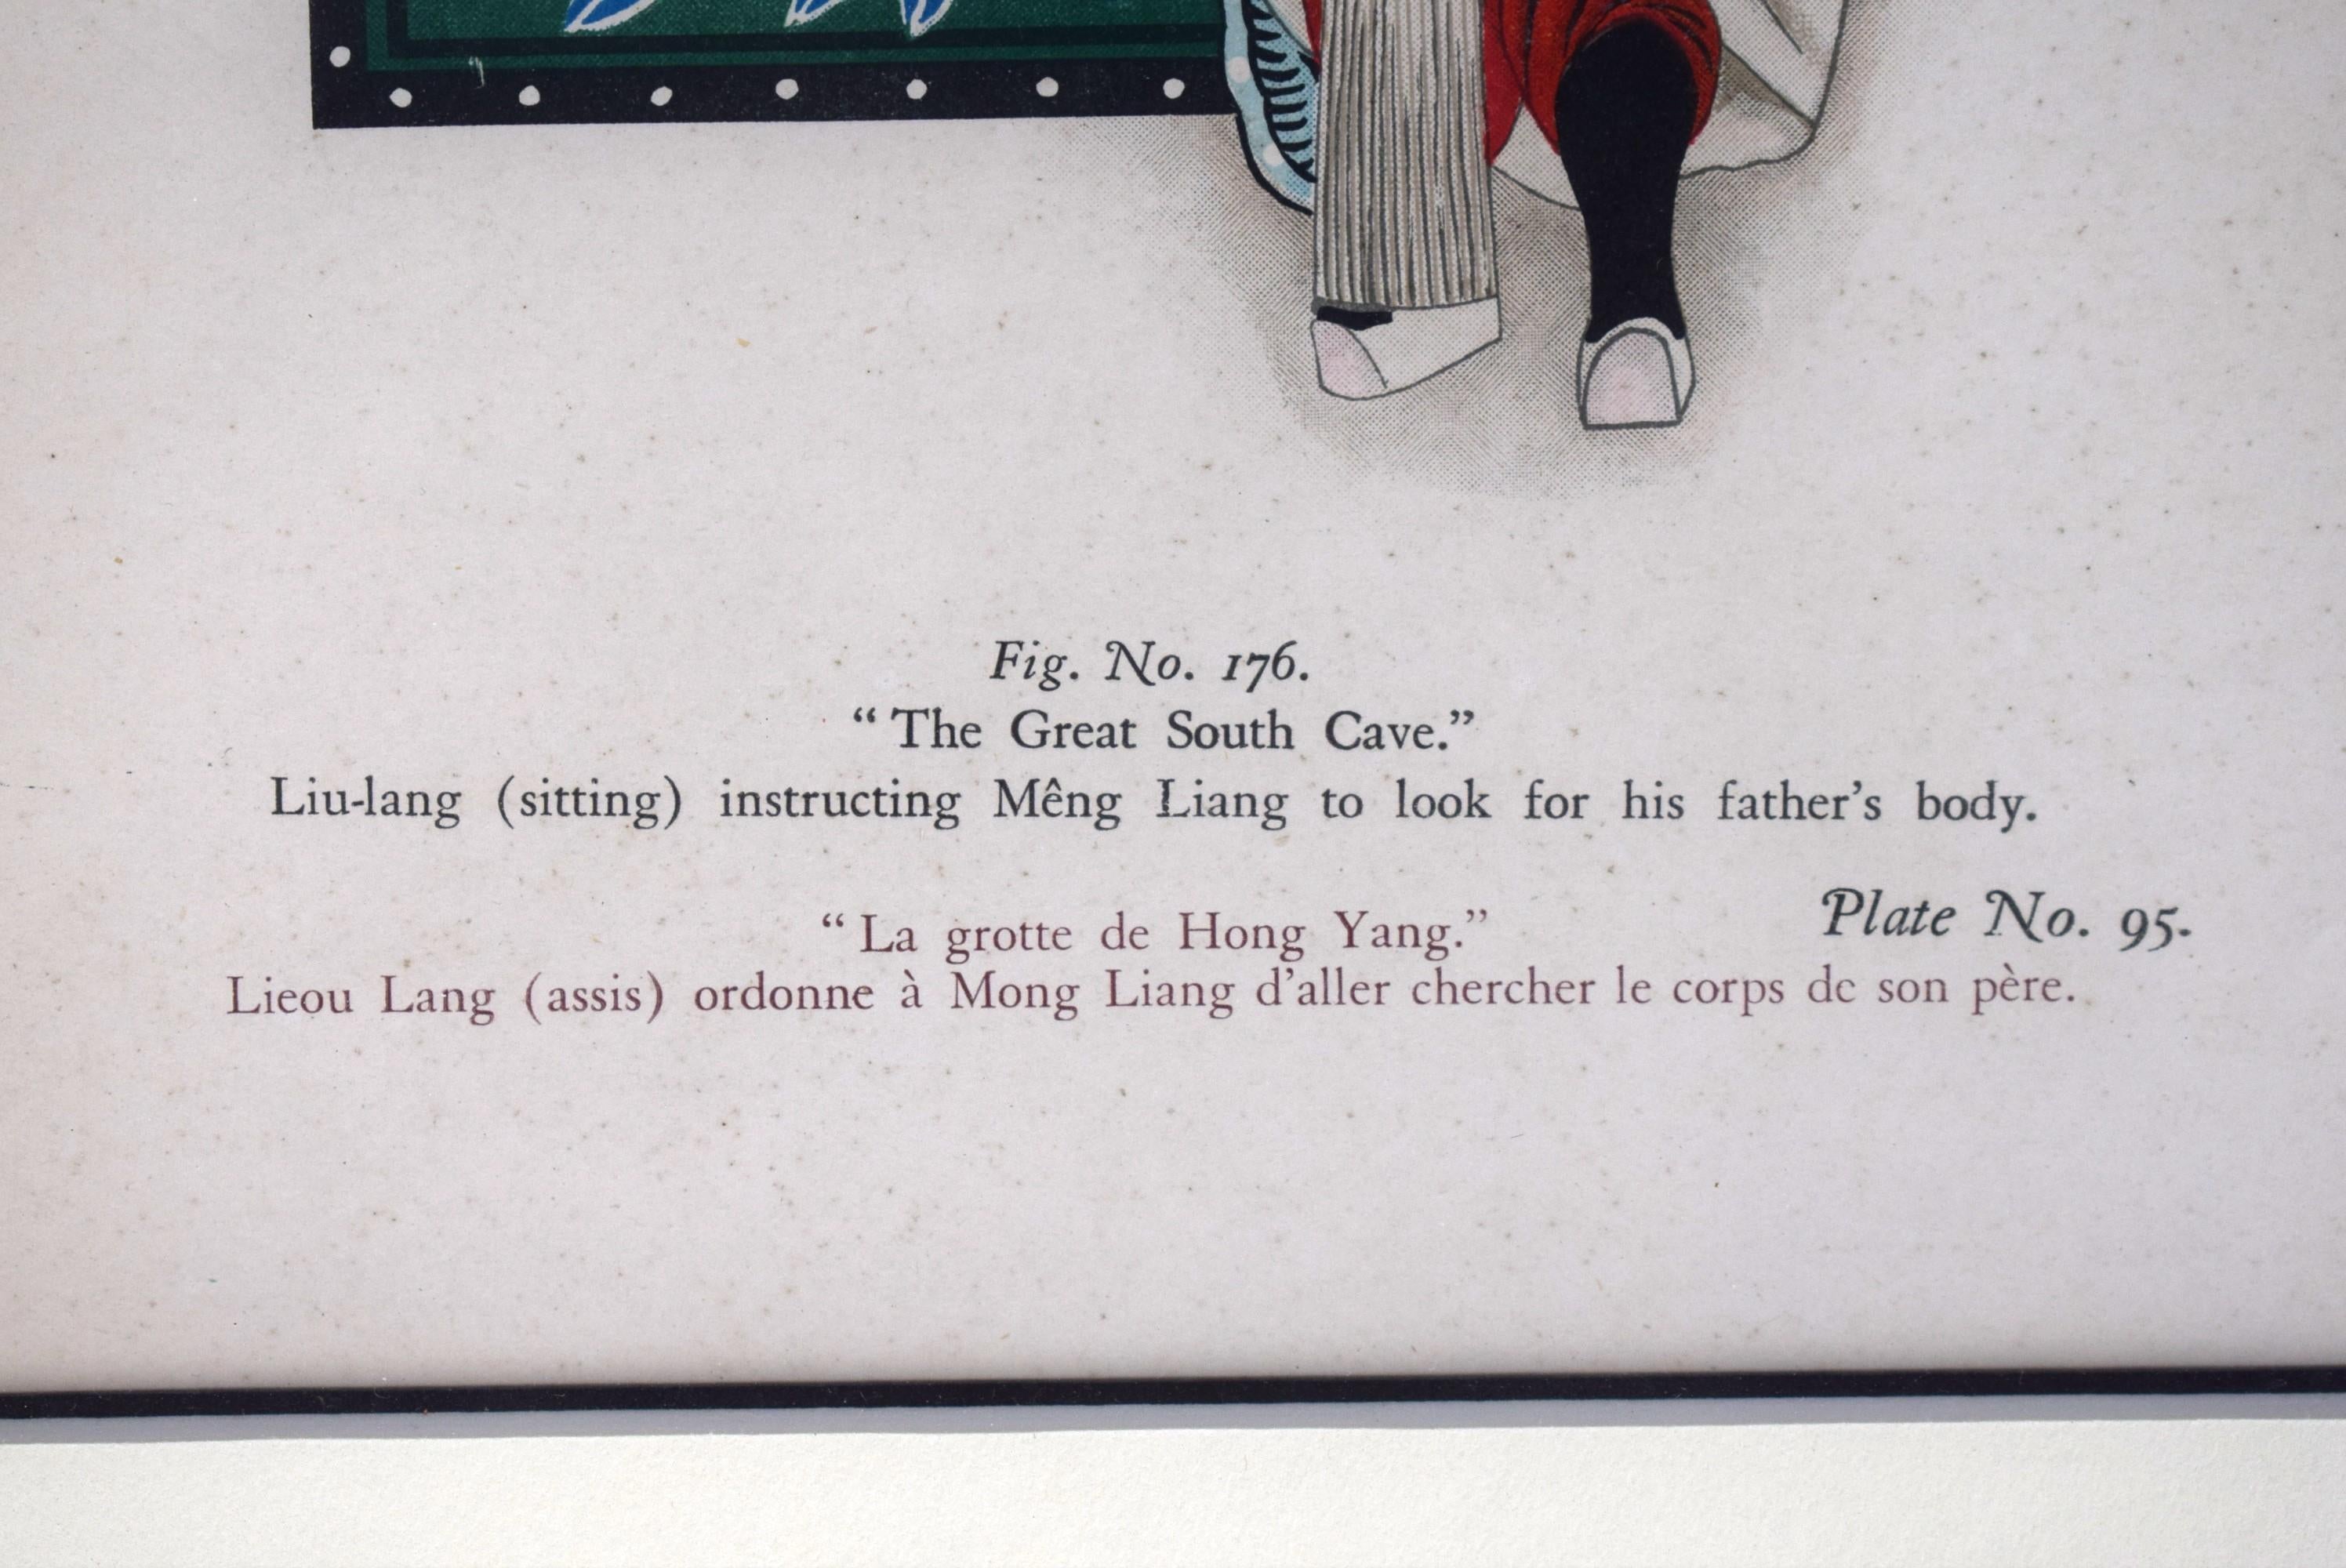 Buntes handkoloriertes Litho Bild. Nr. 176. mit dem Titel Die große Höhle des Südens Liu-lang (sitzend), der Meng Liang anweist, die Leiche seines Vaters zu suchen, aus dem Folio Le Theatre Chinois, das 1935 in Peking veröffentlicht wurde

Kunst Sz: